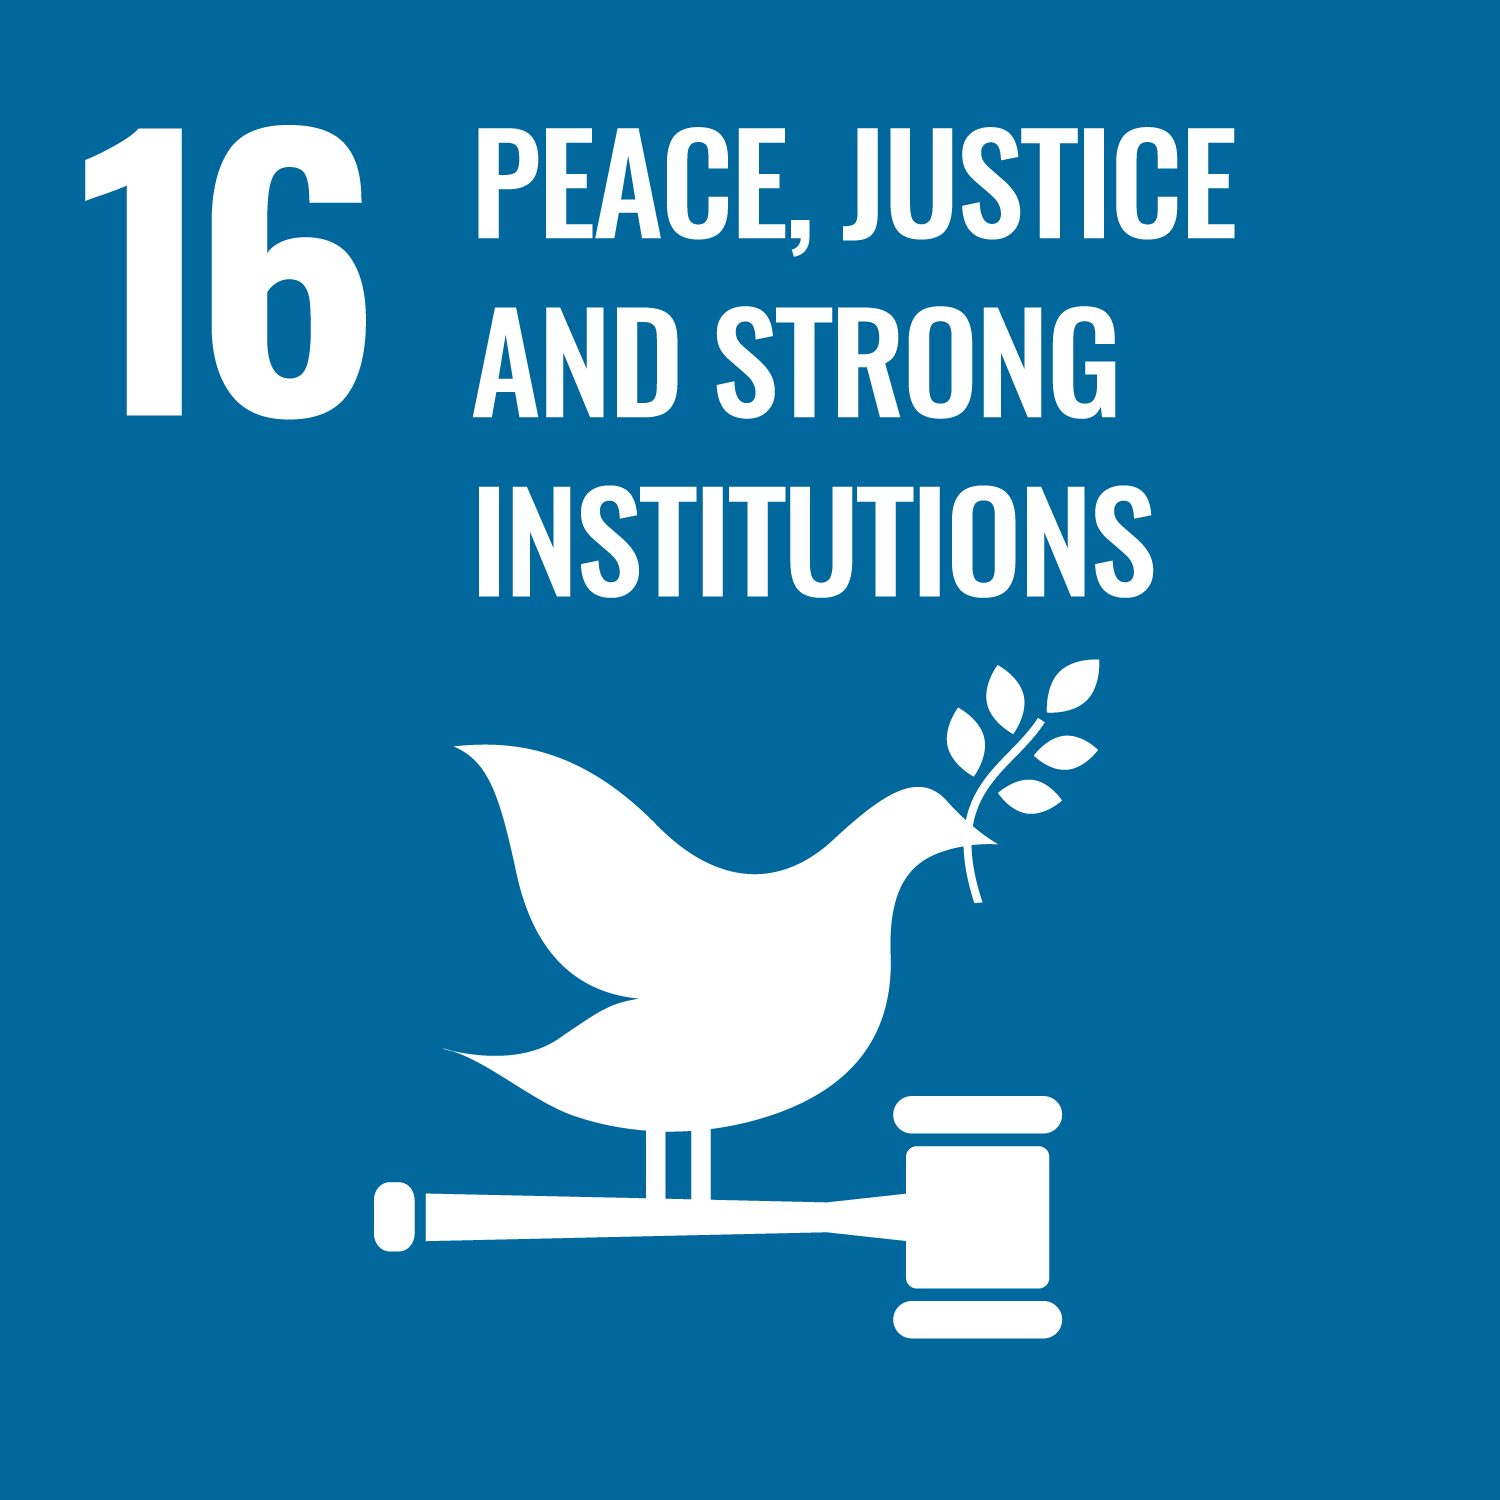 SDG16 ส่งเสริมสังคมที่สงบสุขและครอบคลุมเพื่อการพัฒนาที่ยั่งยืน